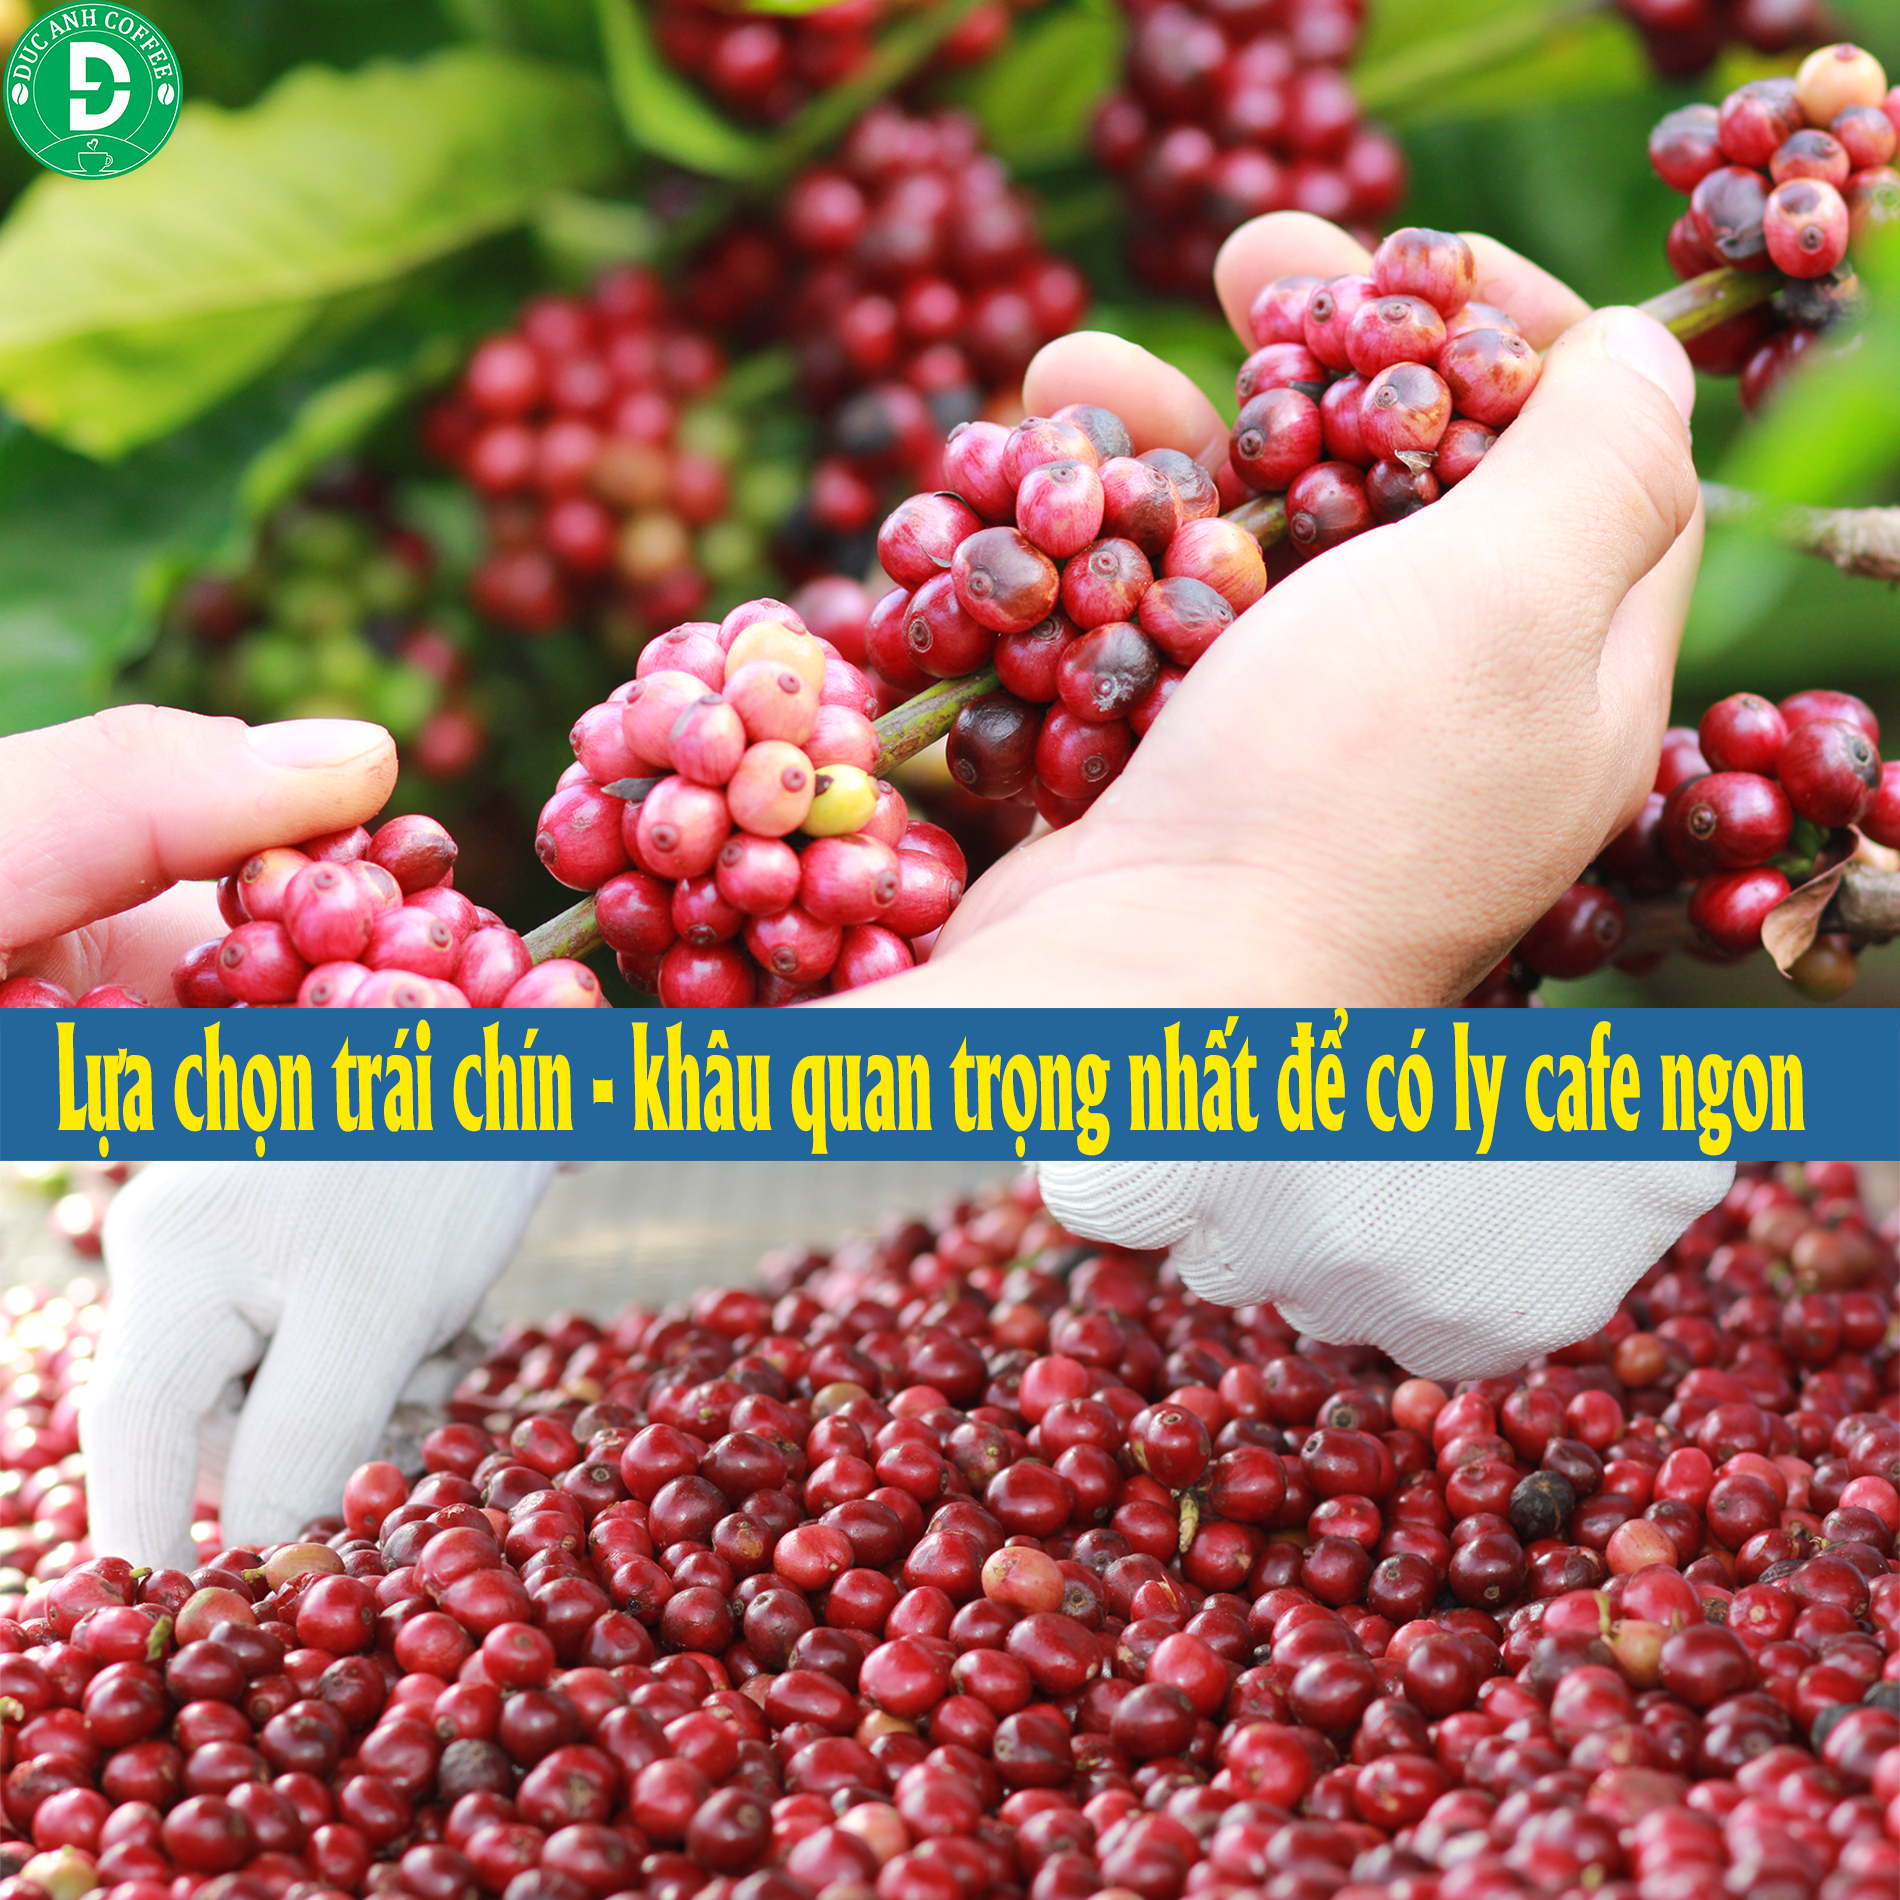 coffee 1kg cà phê rang mộc gói đậm gu thành phần 80% robusta + 20% arabica - cafe ngon nguyên chất đến từ đắk lắk - 2 gói mỗi gói 500gr - cam kết nguyên chất - xay sẵn dùng pha phin 3